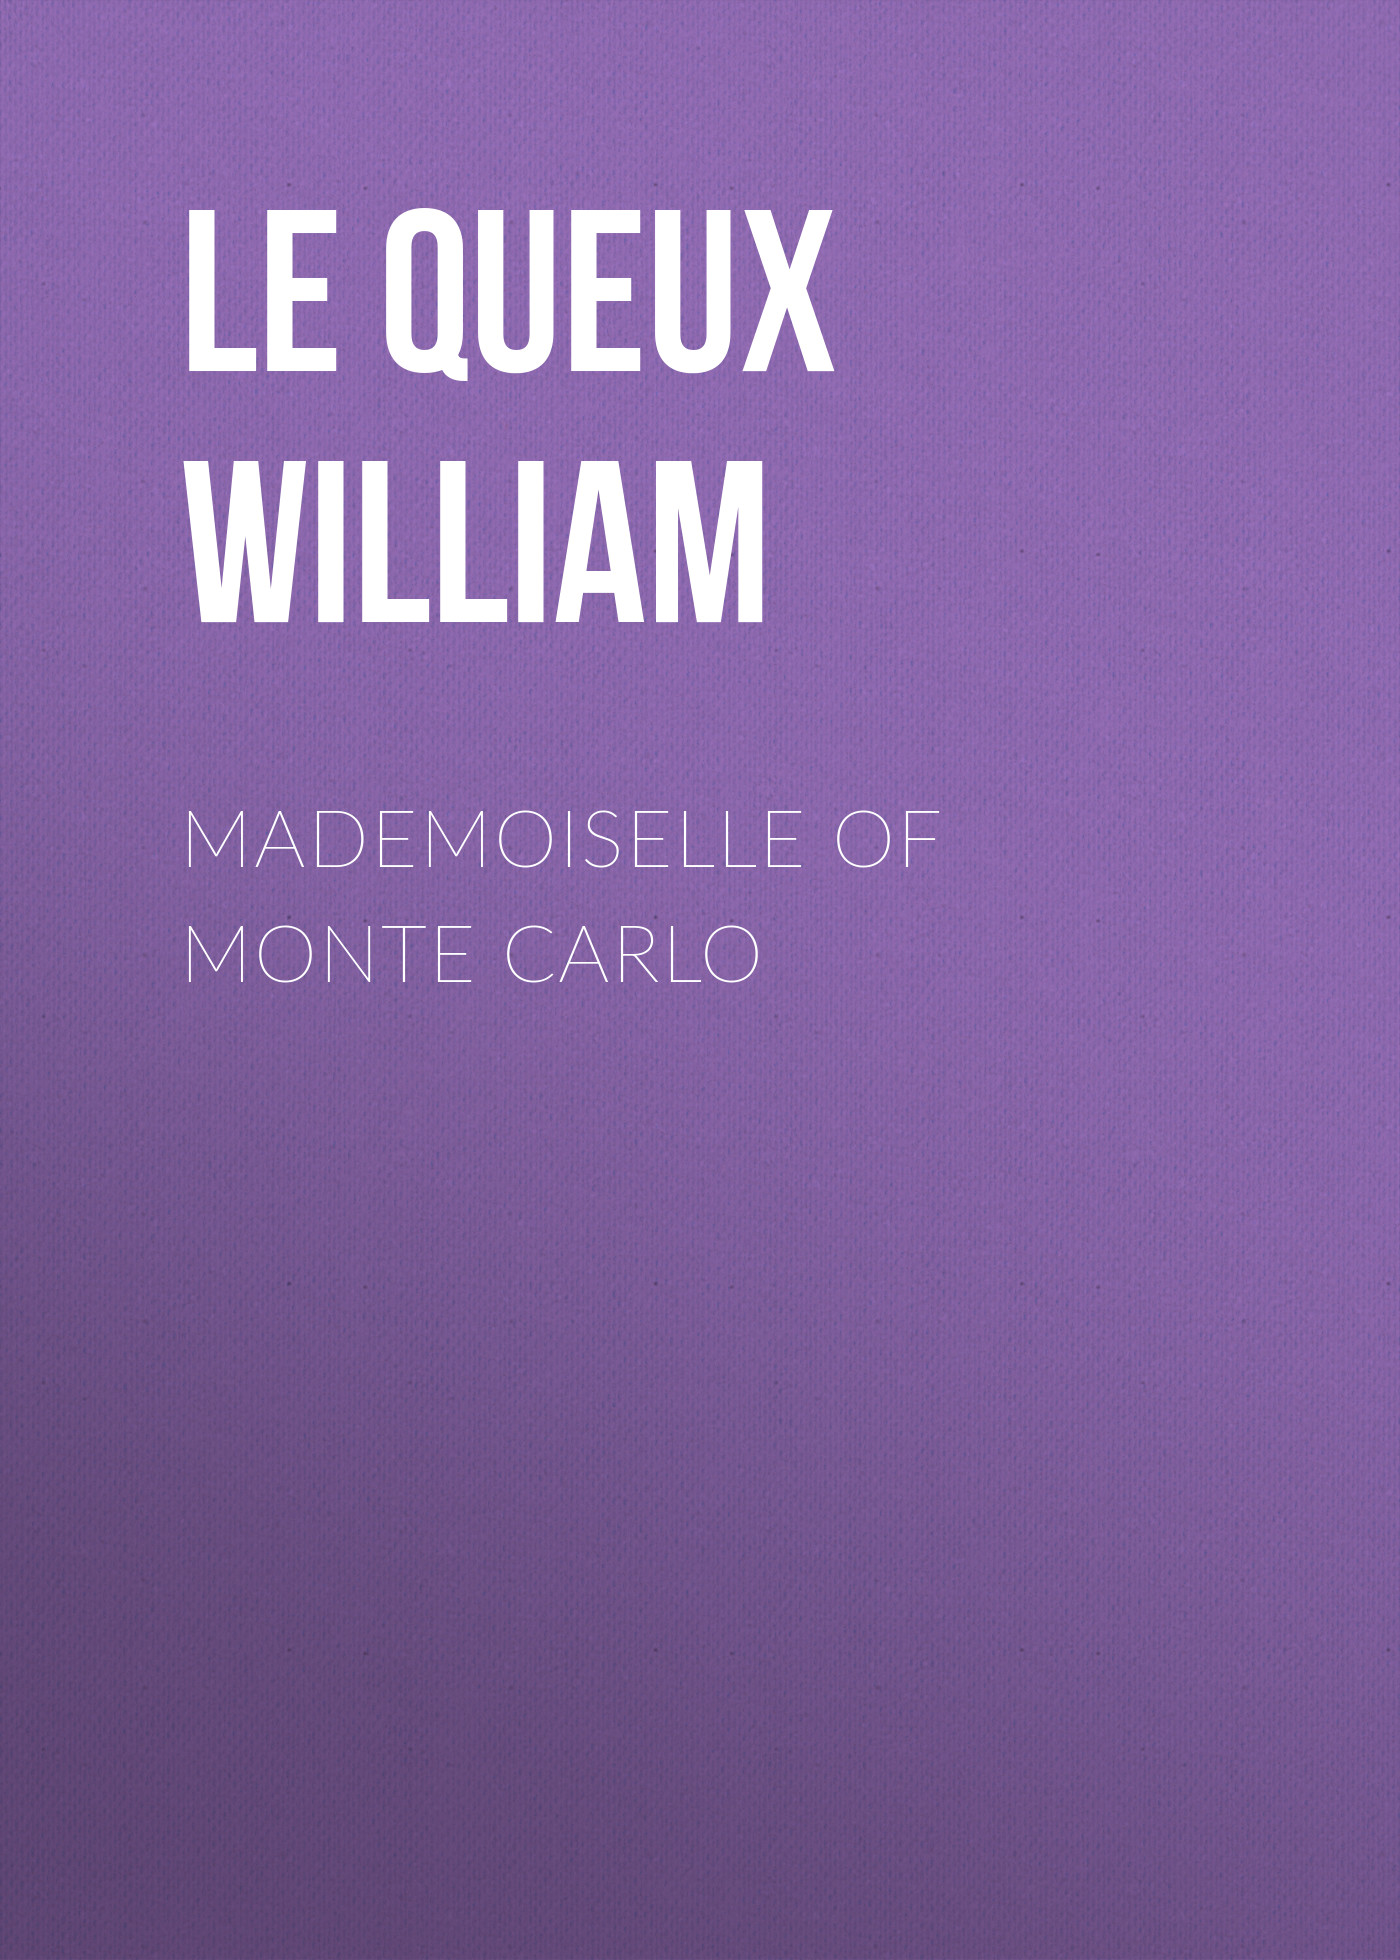 Книга Mademoiselle of Monte Carlo из серии , созданная William Le Queux, может относится к жанру Зарубежная классика, Классические детективы, Зарубежные детективы, Зарубежная старинная литература. Стоимость электронной книги Mademoiselle of Monte Carlo с идентификатором 36094725 составляет 0 руб.